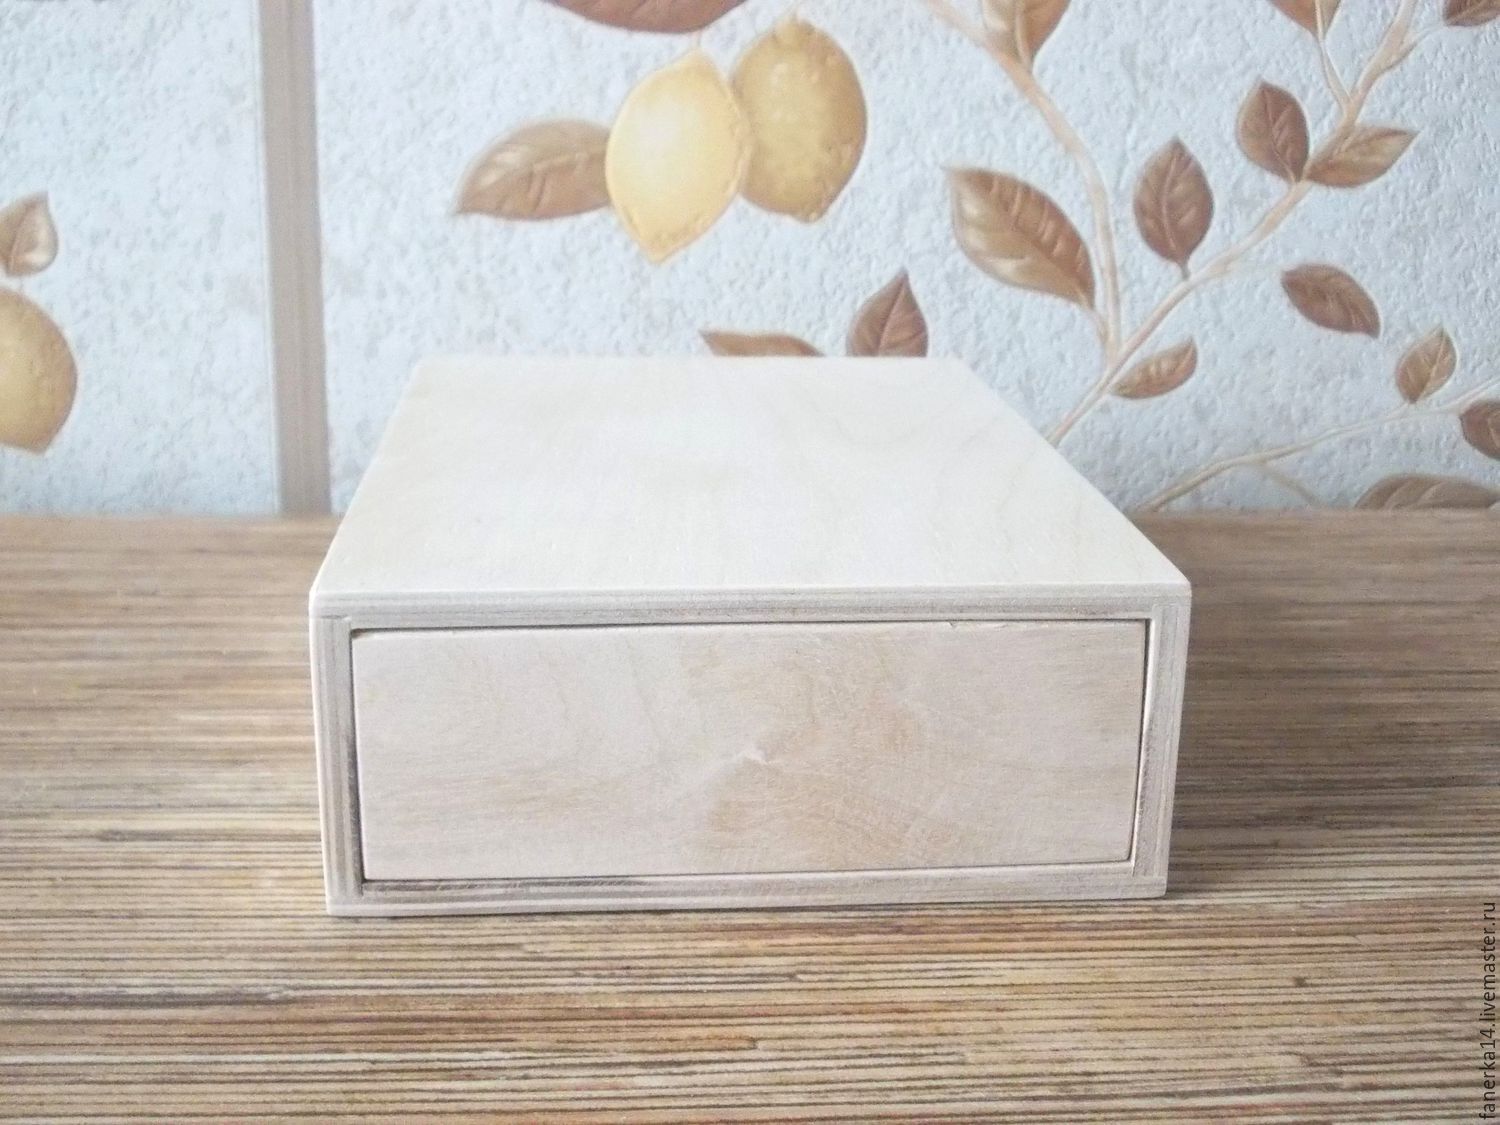 макет коробка пенал из фанеры